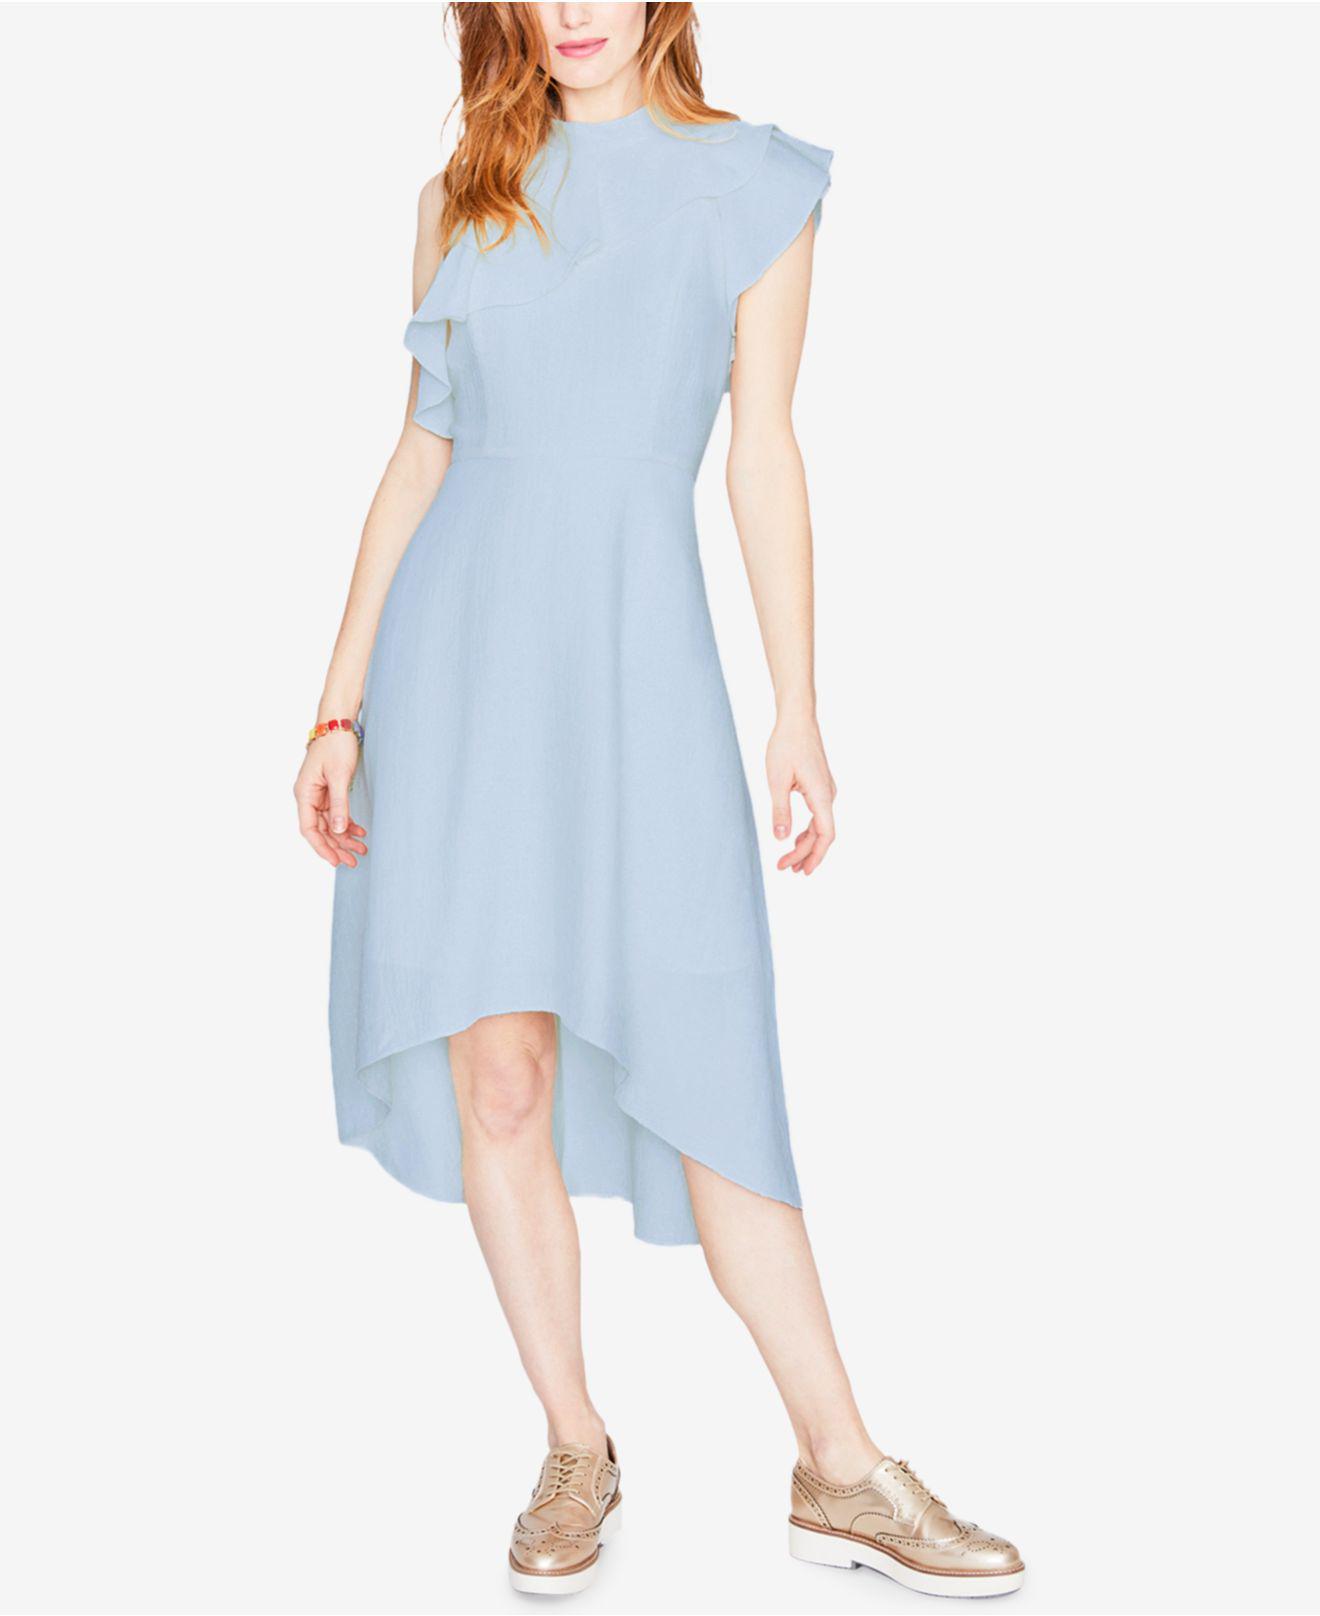 Macys Light Blue Dress Online Hotsell ...